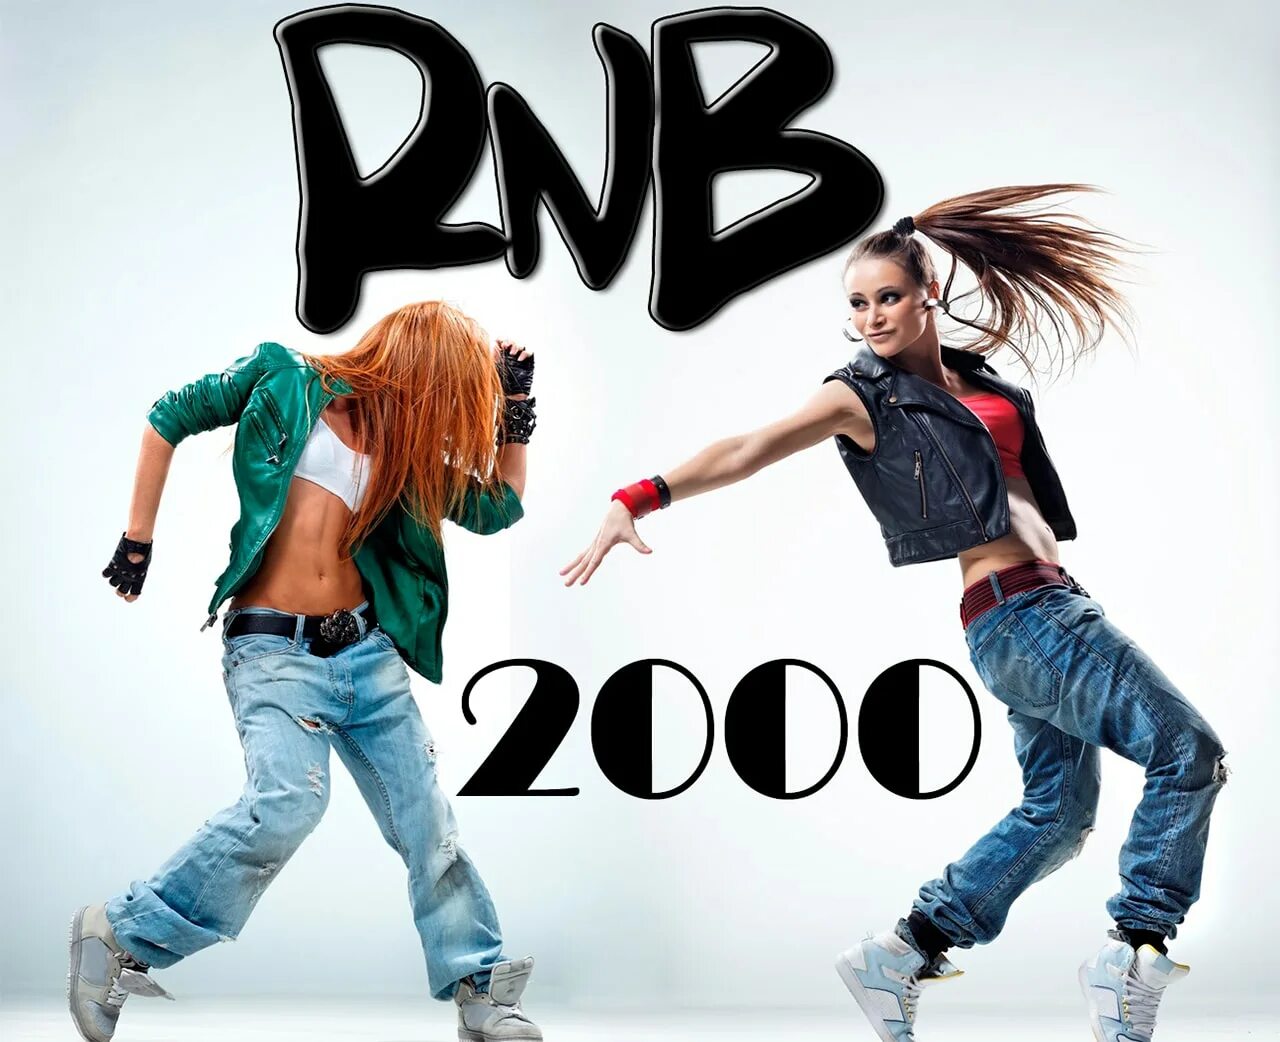 Музыка 2000 х. R&B 2000. РНБ 2000. RNB исполнители 2000х. RNB 2000 стиль.